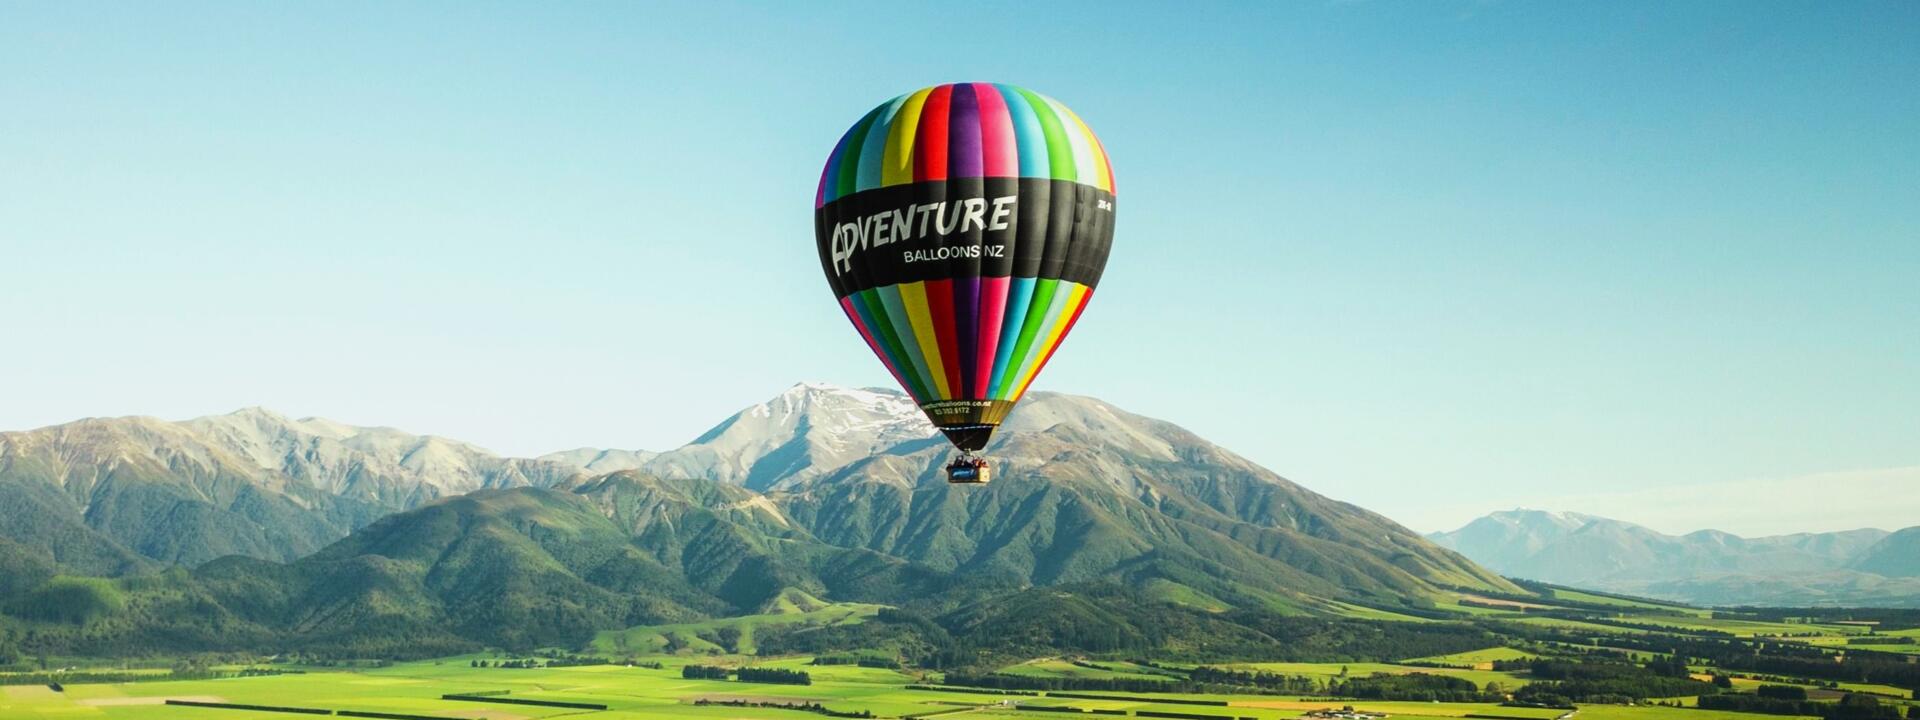 Adventure balloons1_0.jpeg